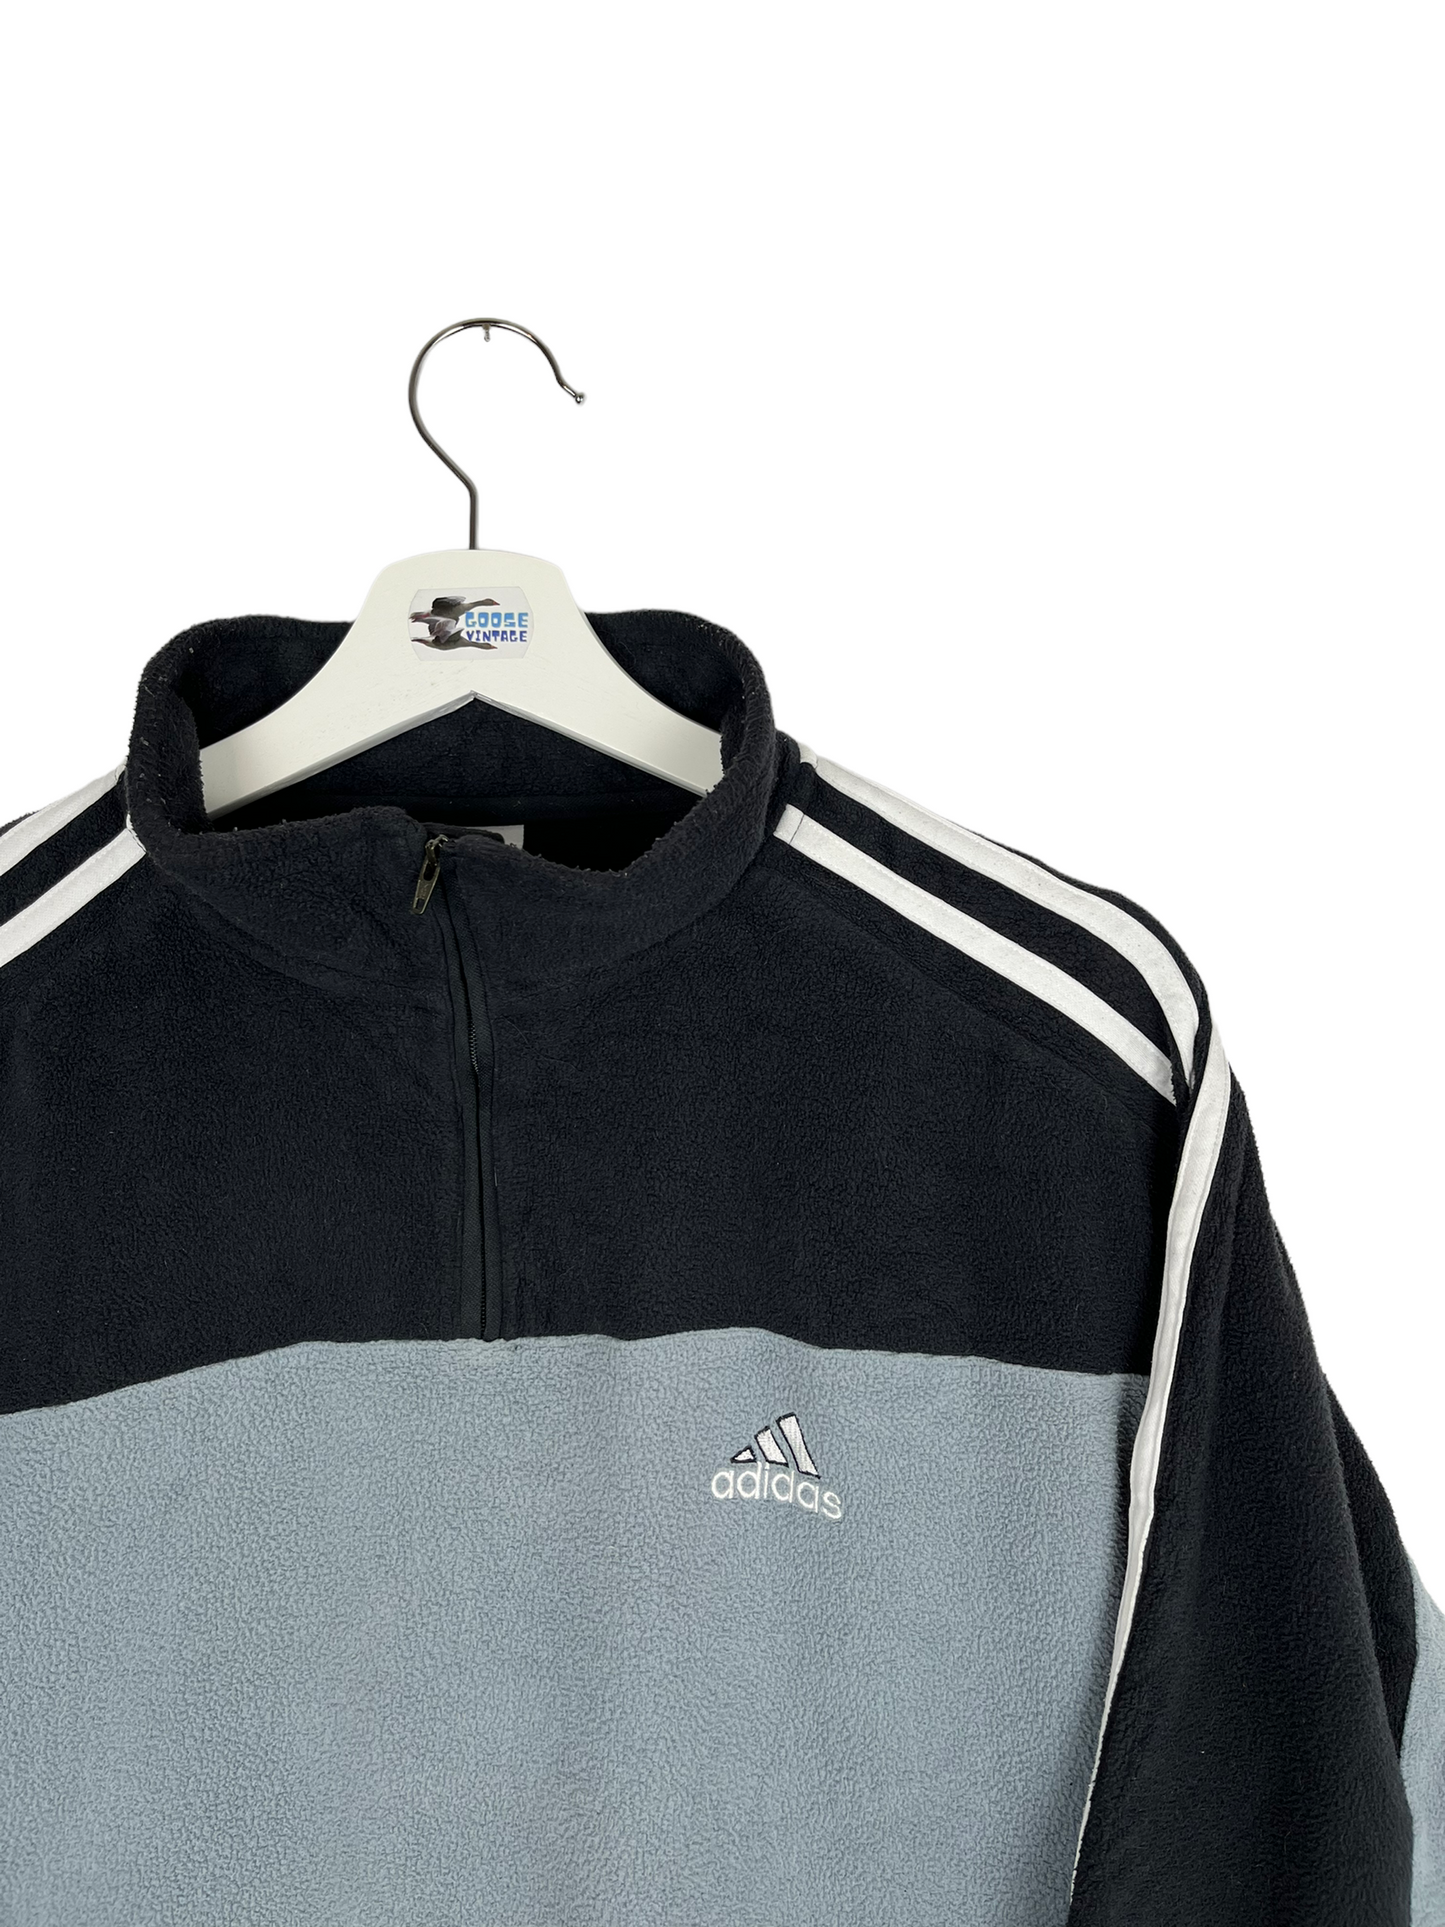 Vintage 00’s Adidas Fleece 1/4 Zip Sweatshirt - Medium